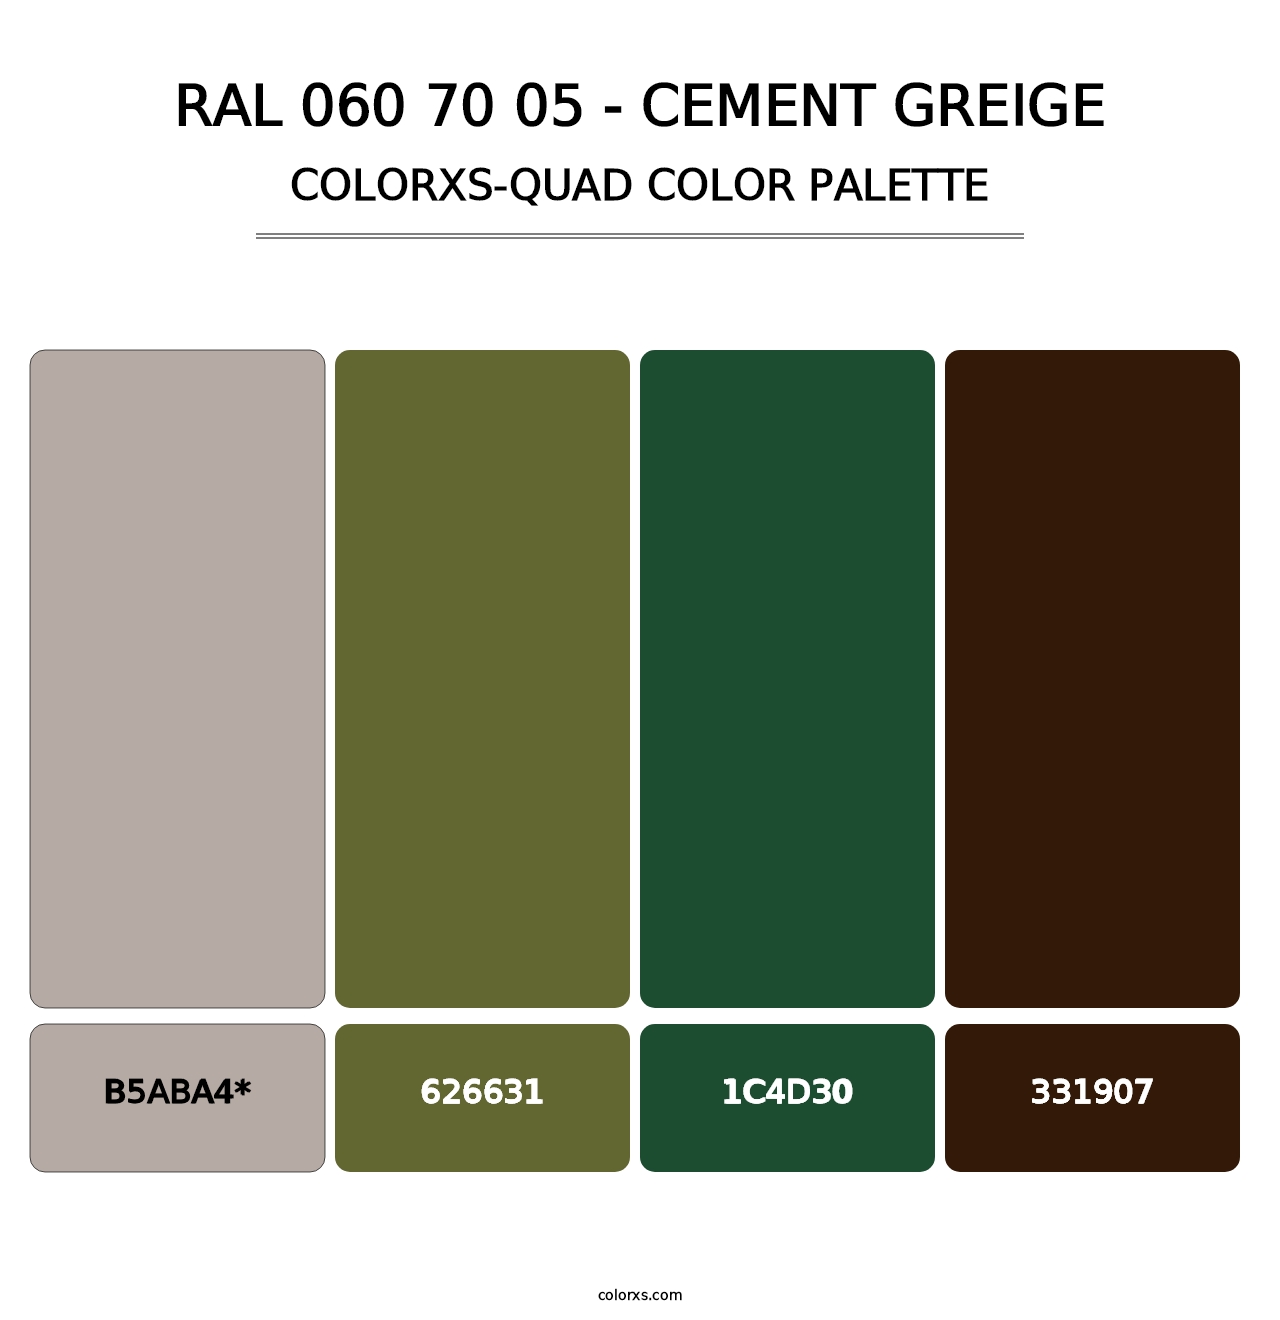 RAL 060 70 05 - Cement Greige - Colorxs Quad Palette